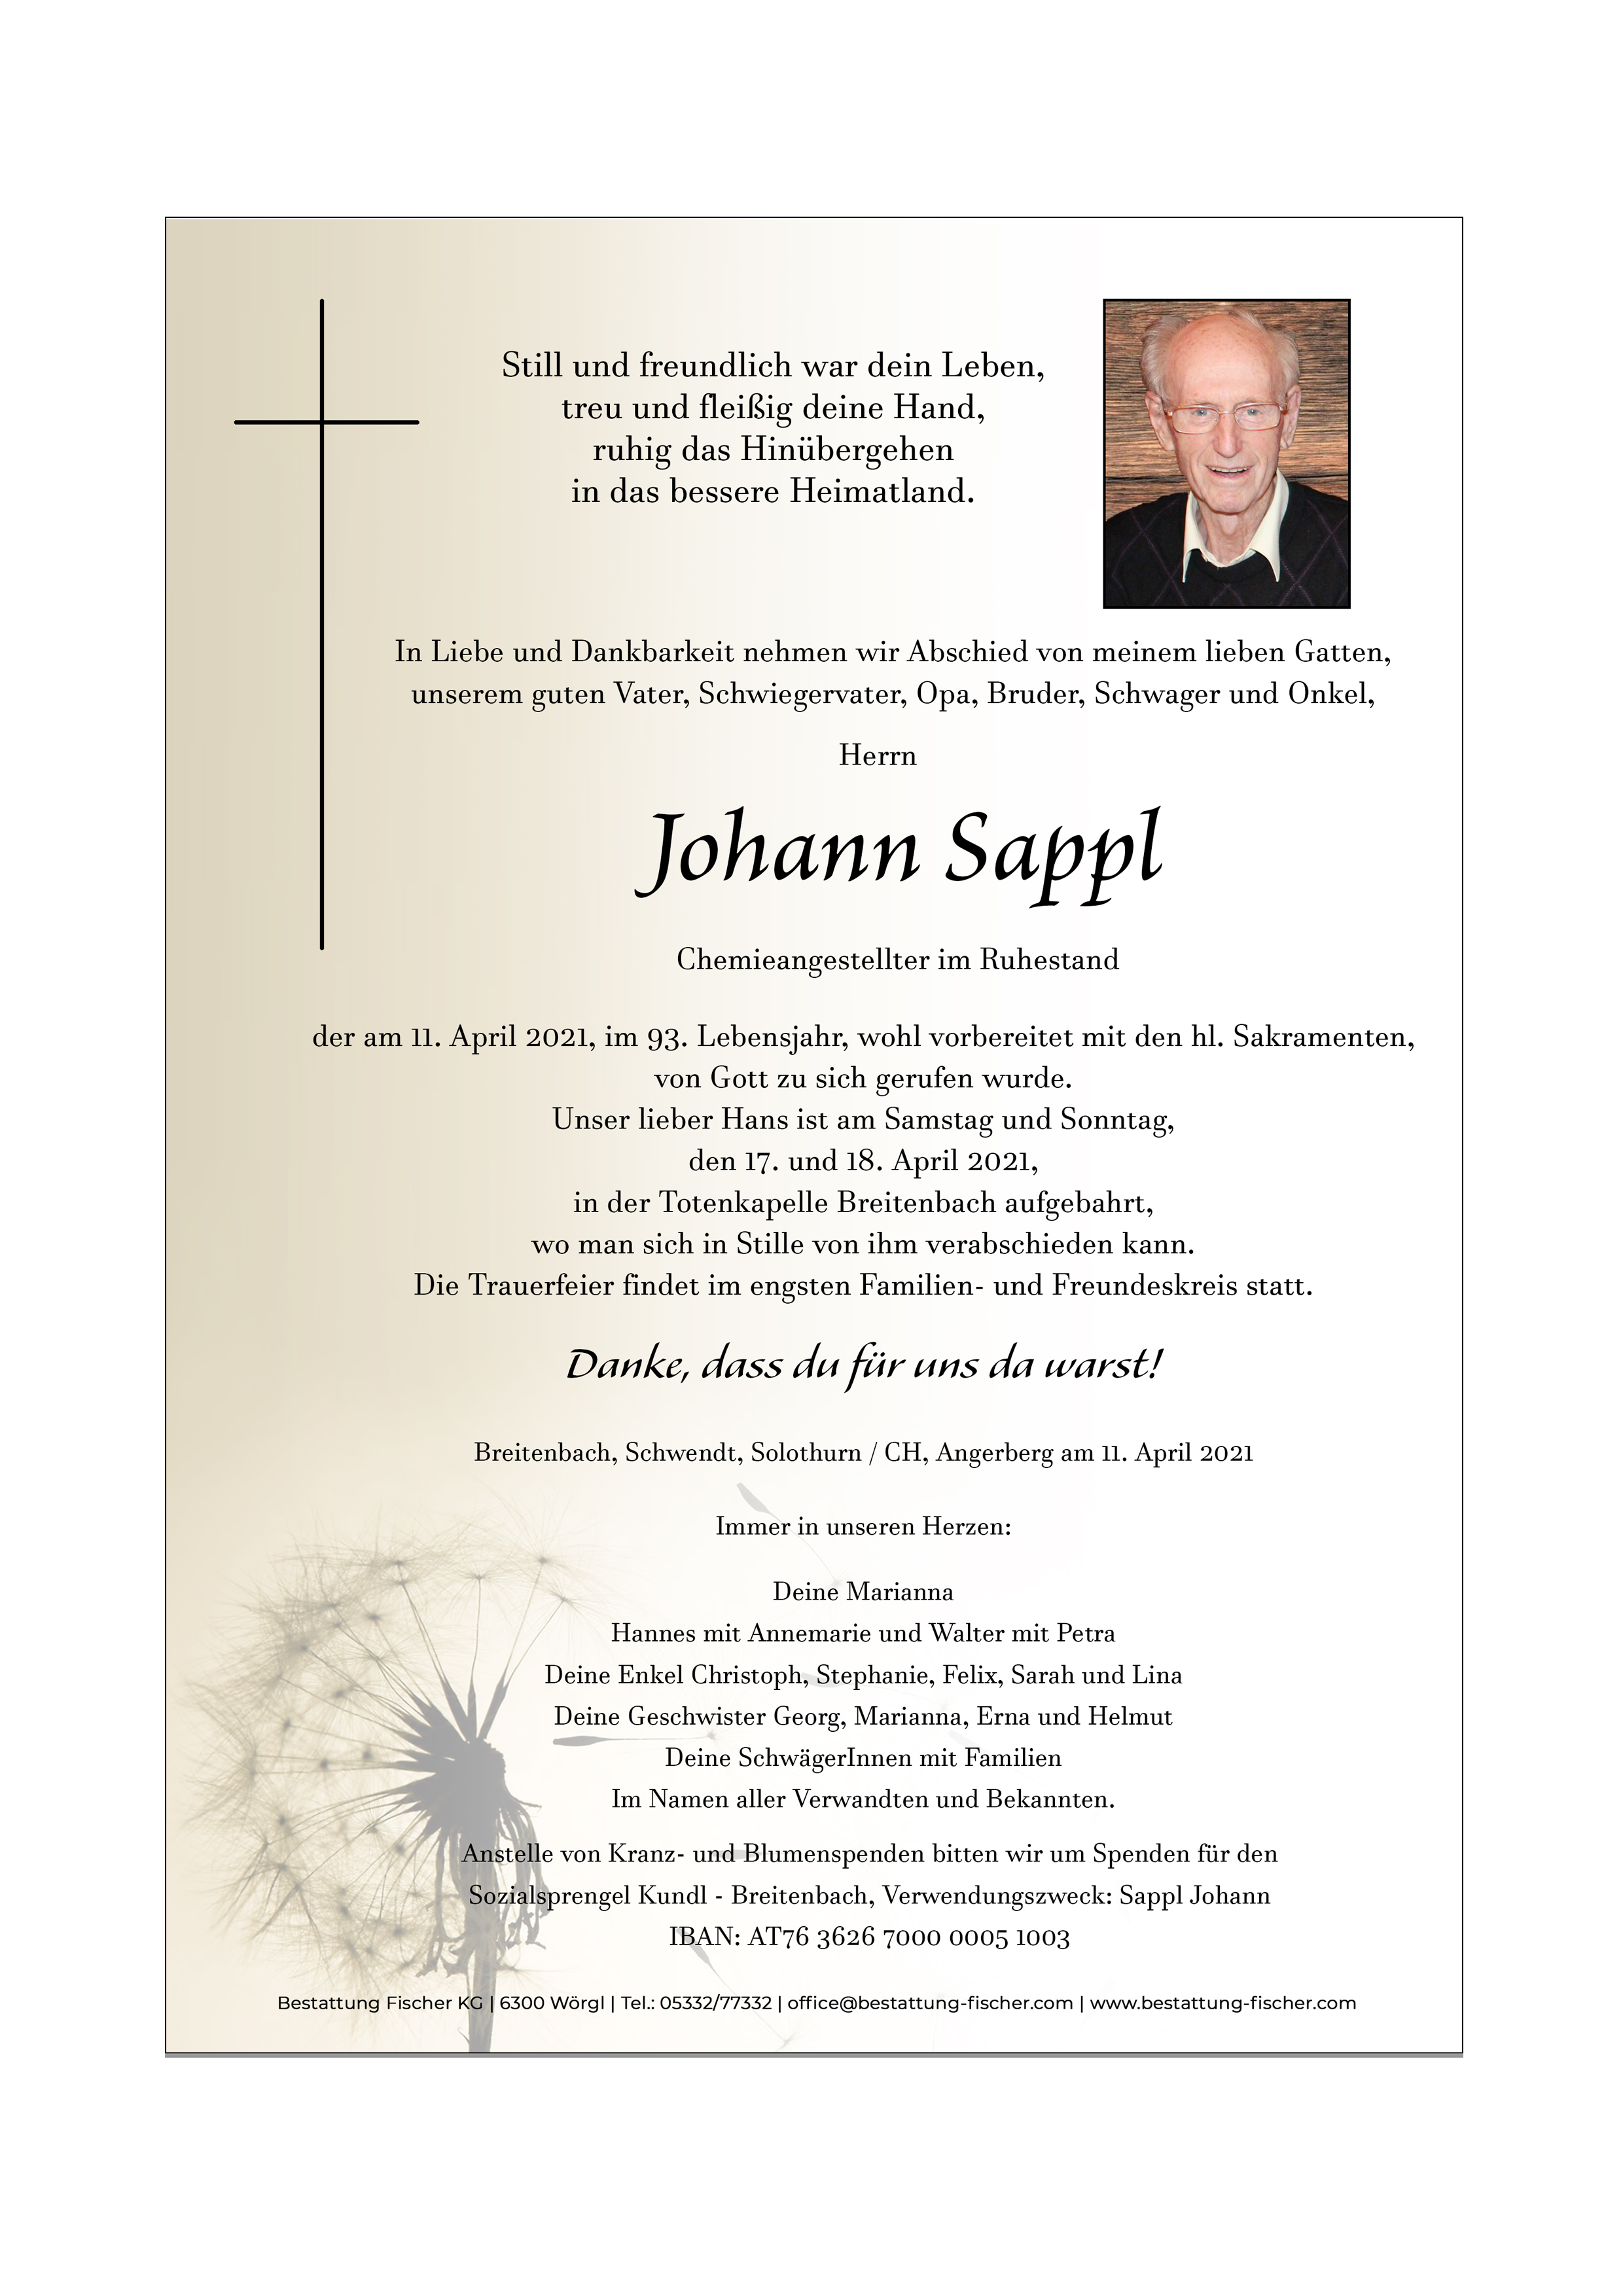 Johann Sappl